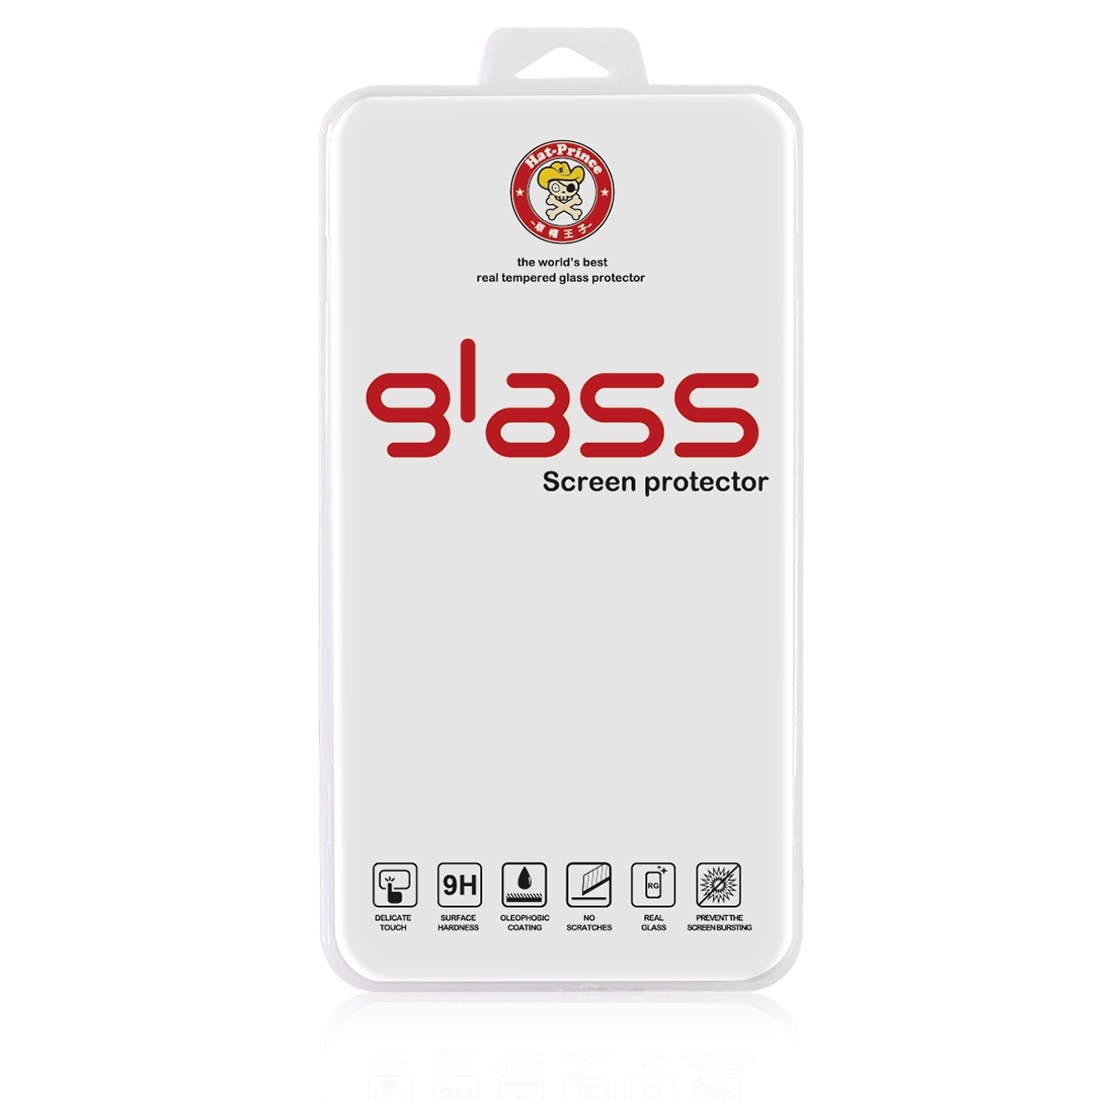 Böjt härdat fullskärmsskydd i glas till iPhone 8 Plus / 7 Plus - Guld